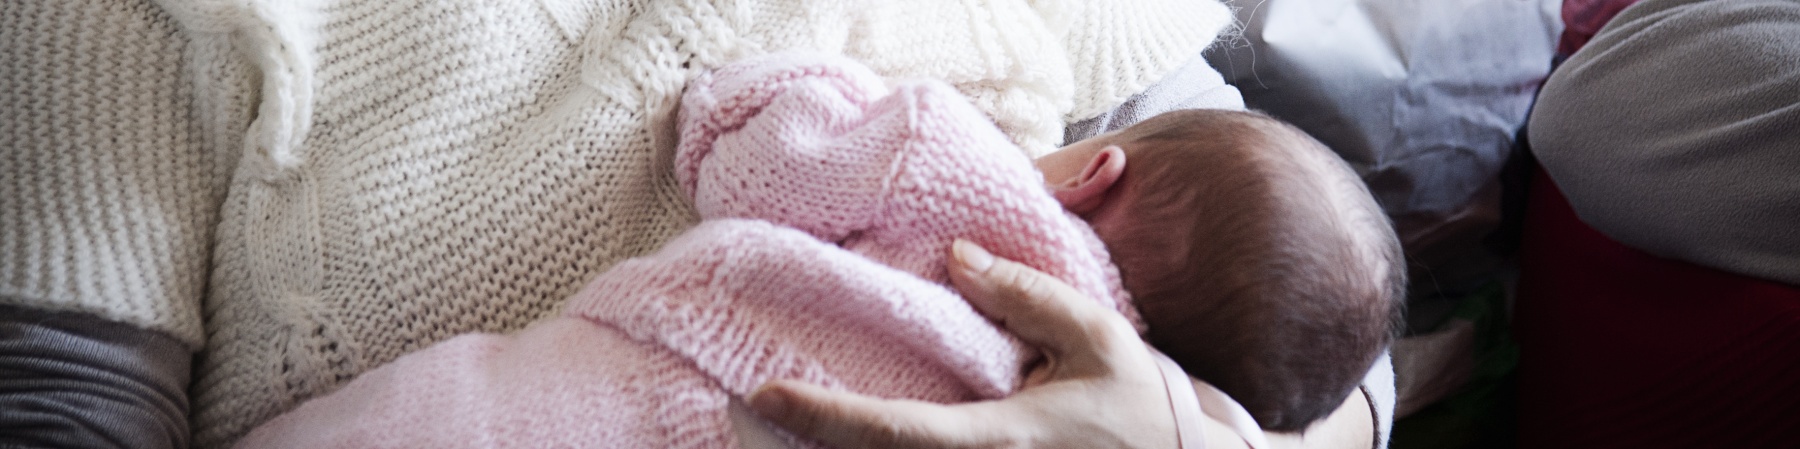 donna-maglione-bianco-tiene-in-braccio-neonato-tutina-rosa